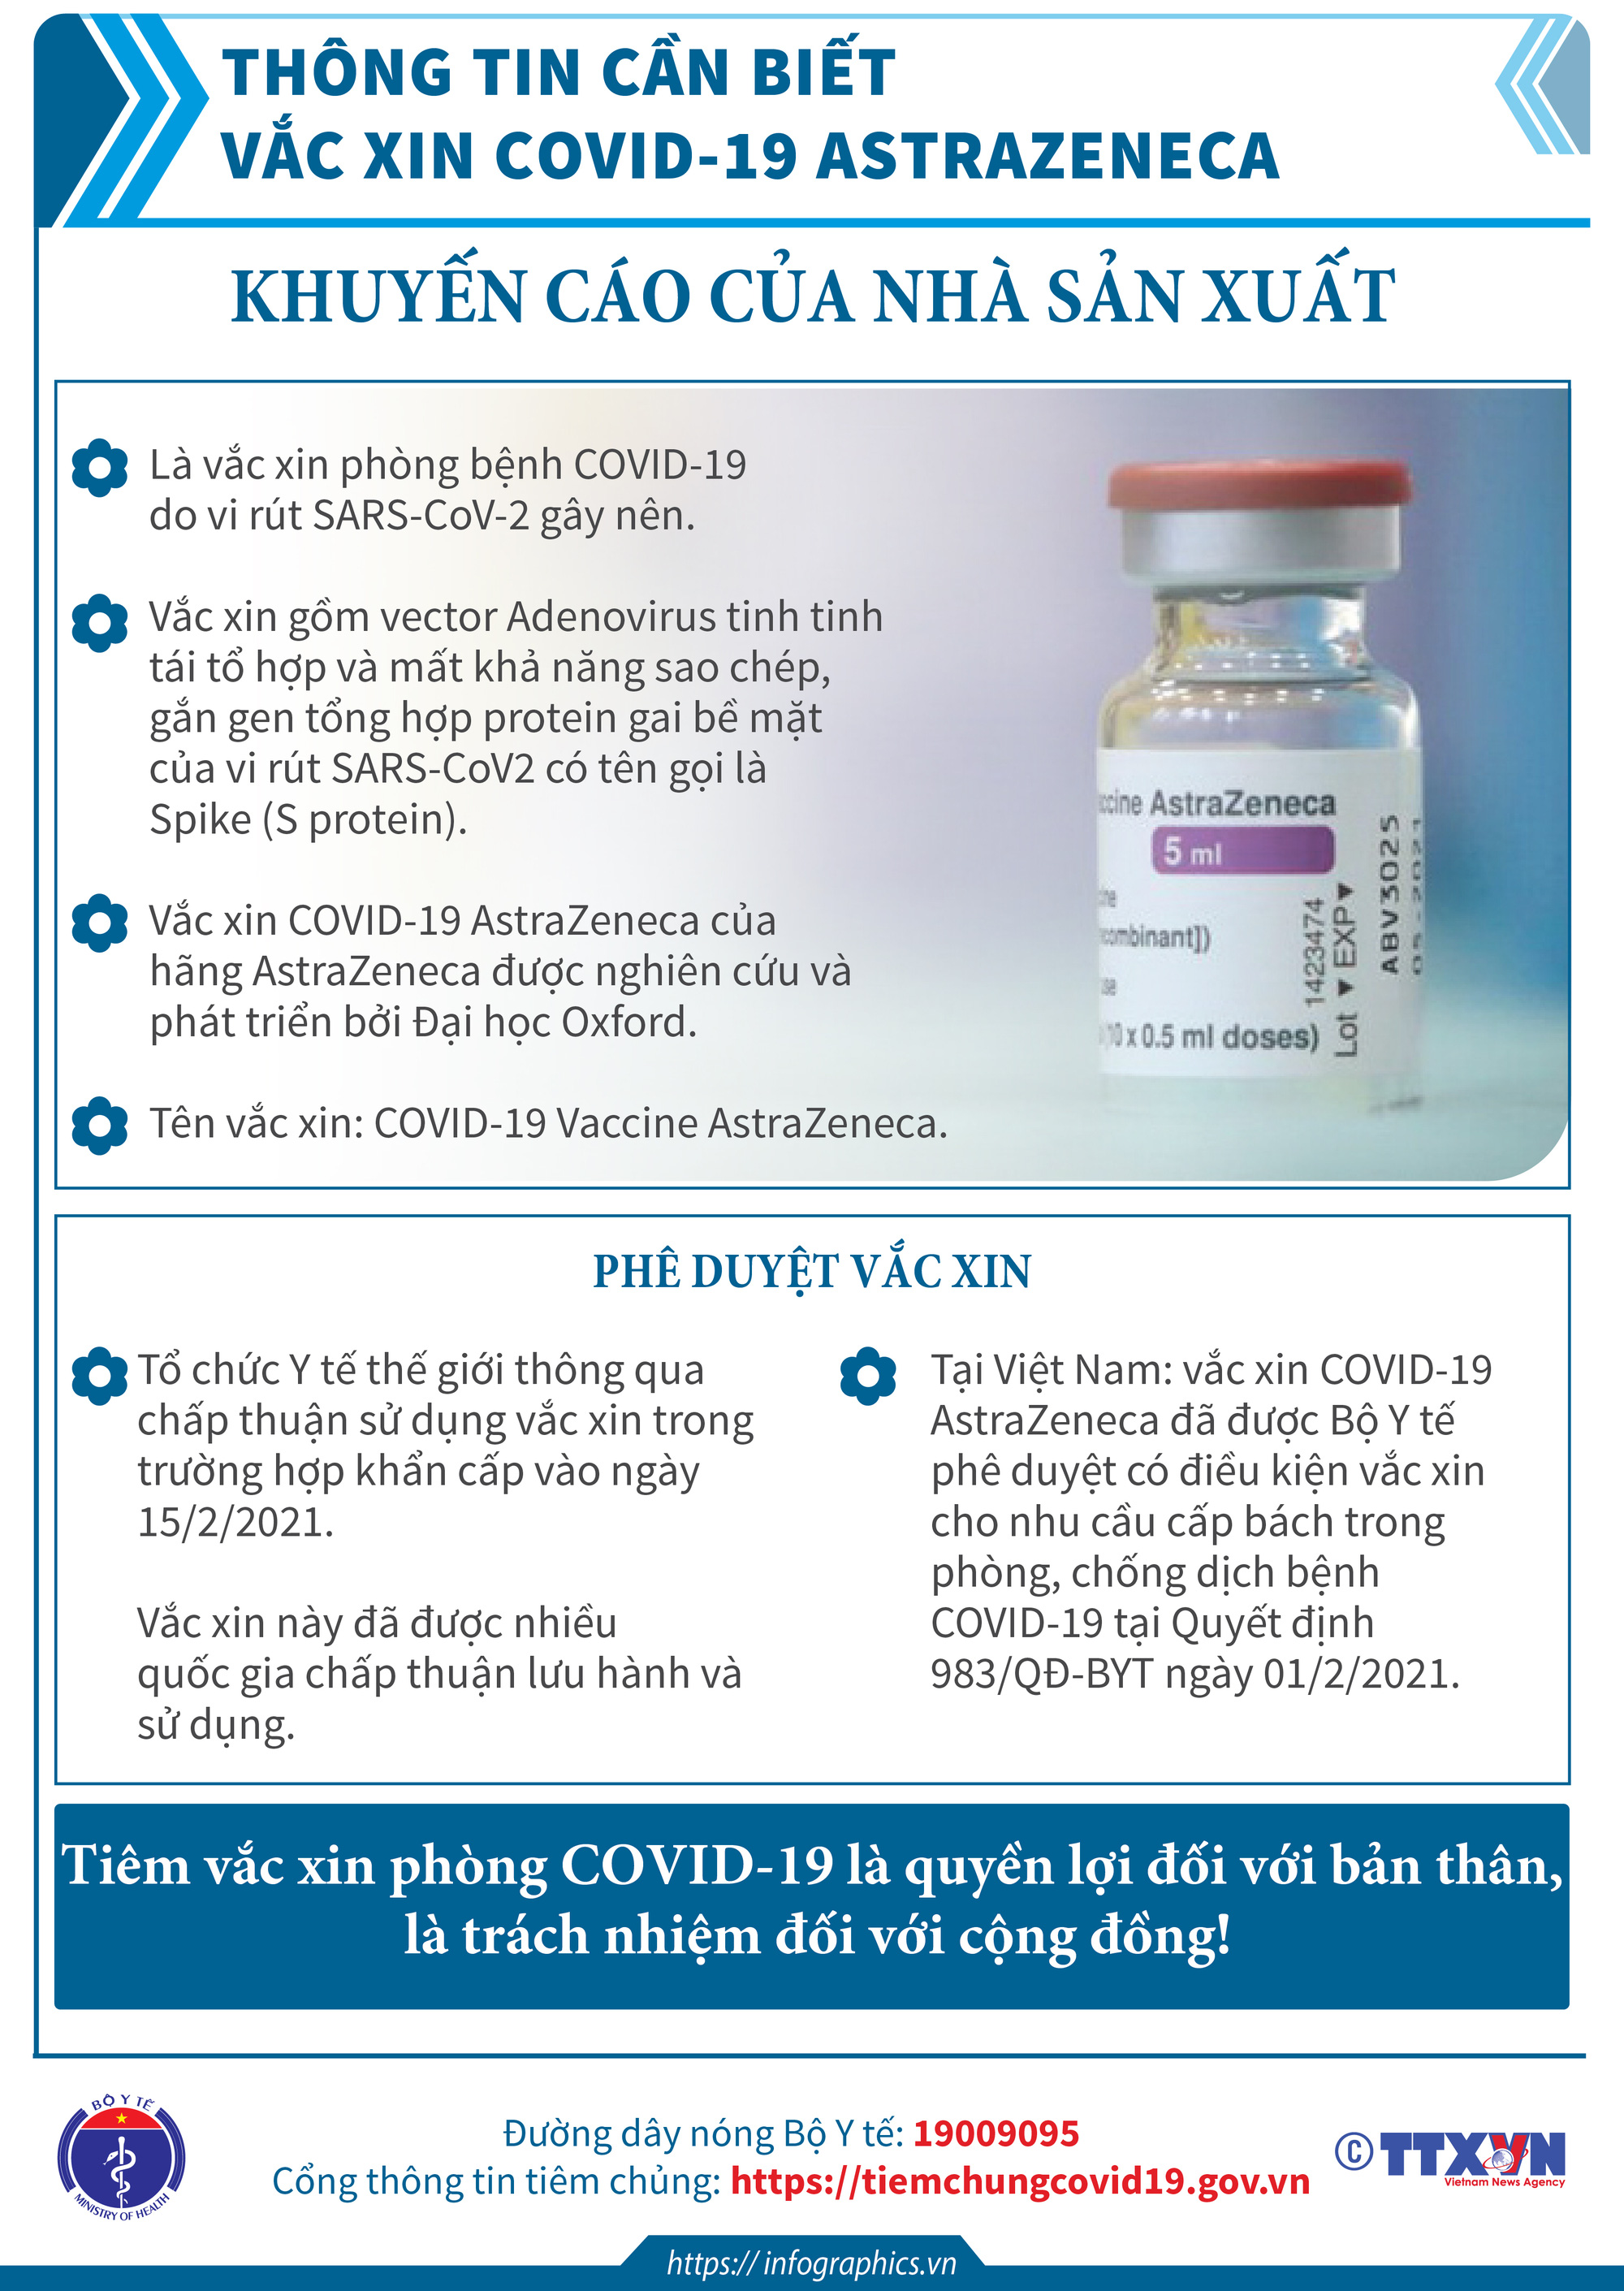 Thông tin cần biết về một số vaccine COVID-19 đang triển khai tiêm chủng tại Việt Nam. - Ảnh 1.